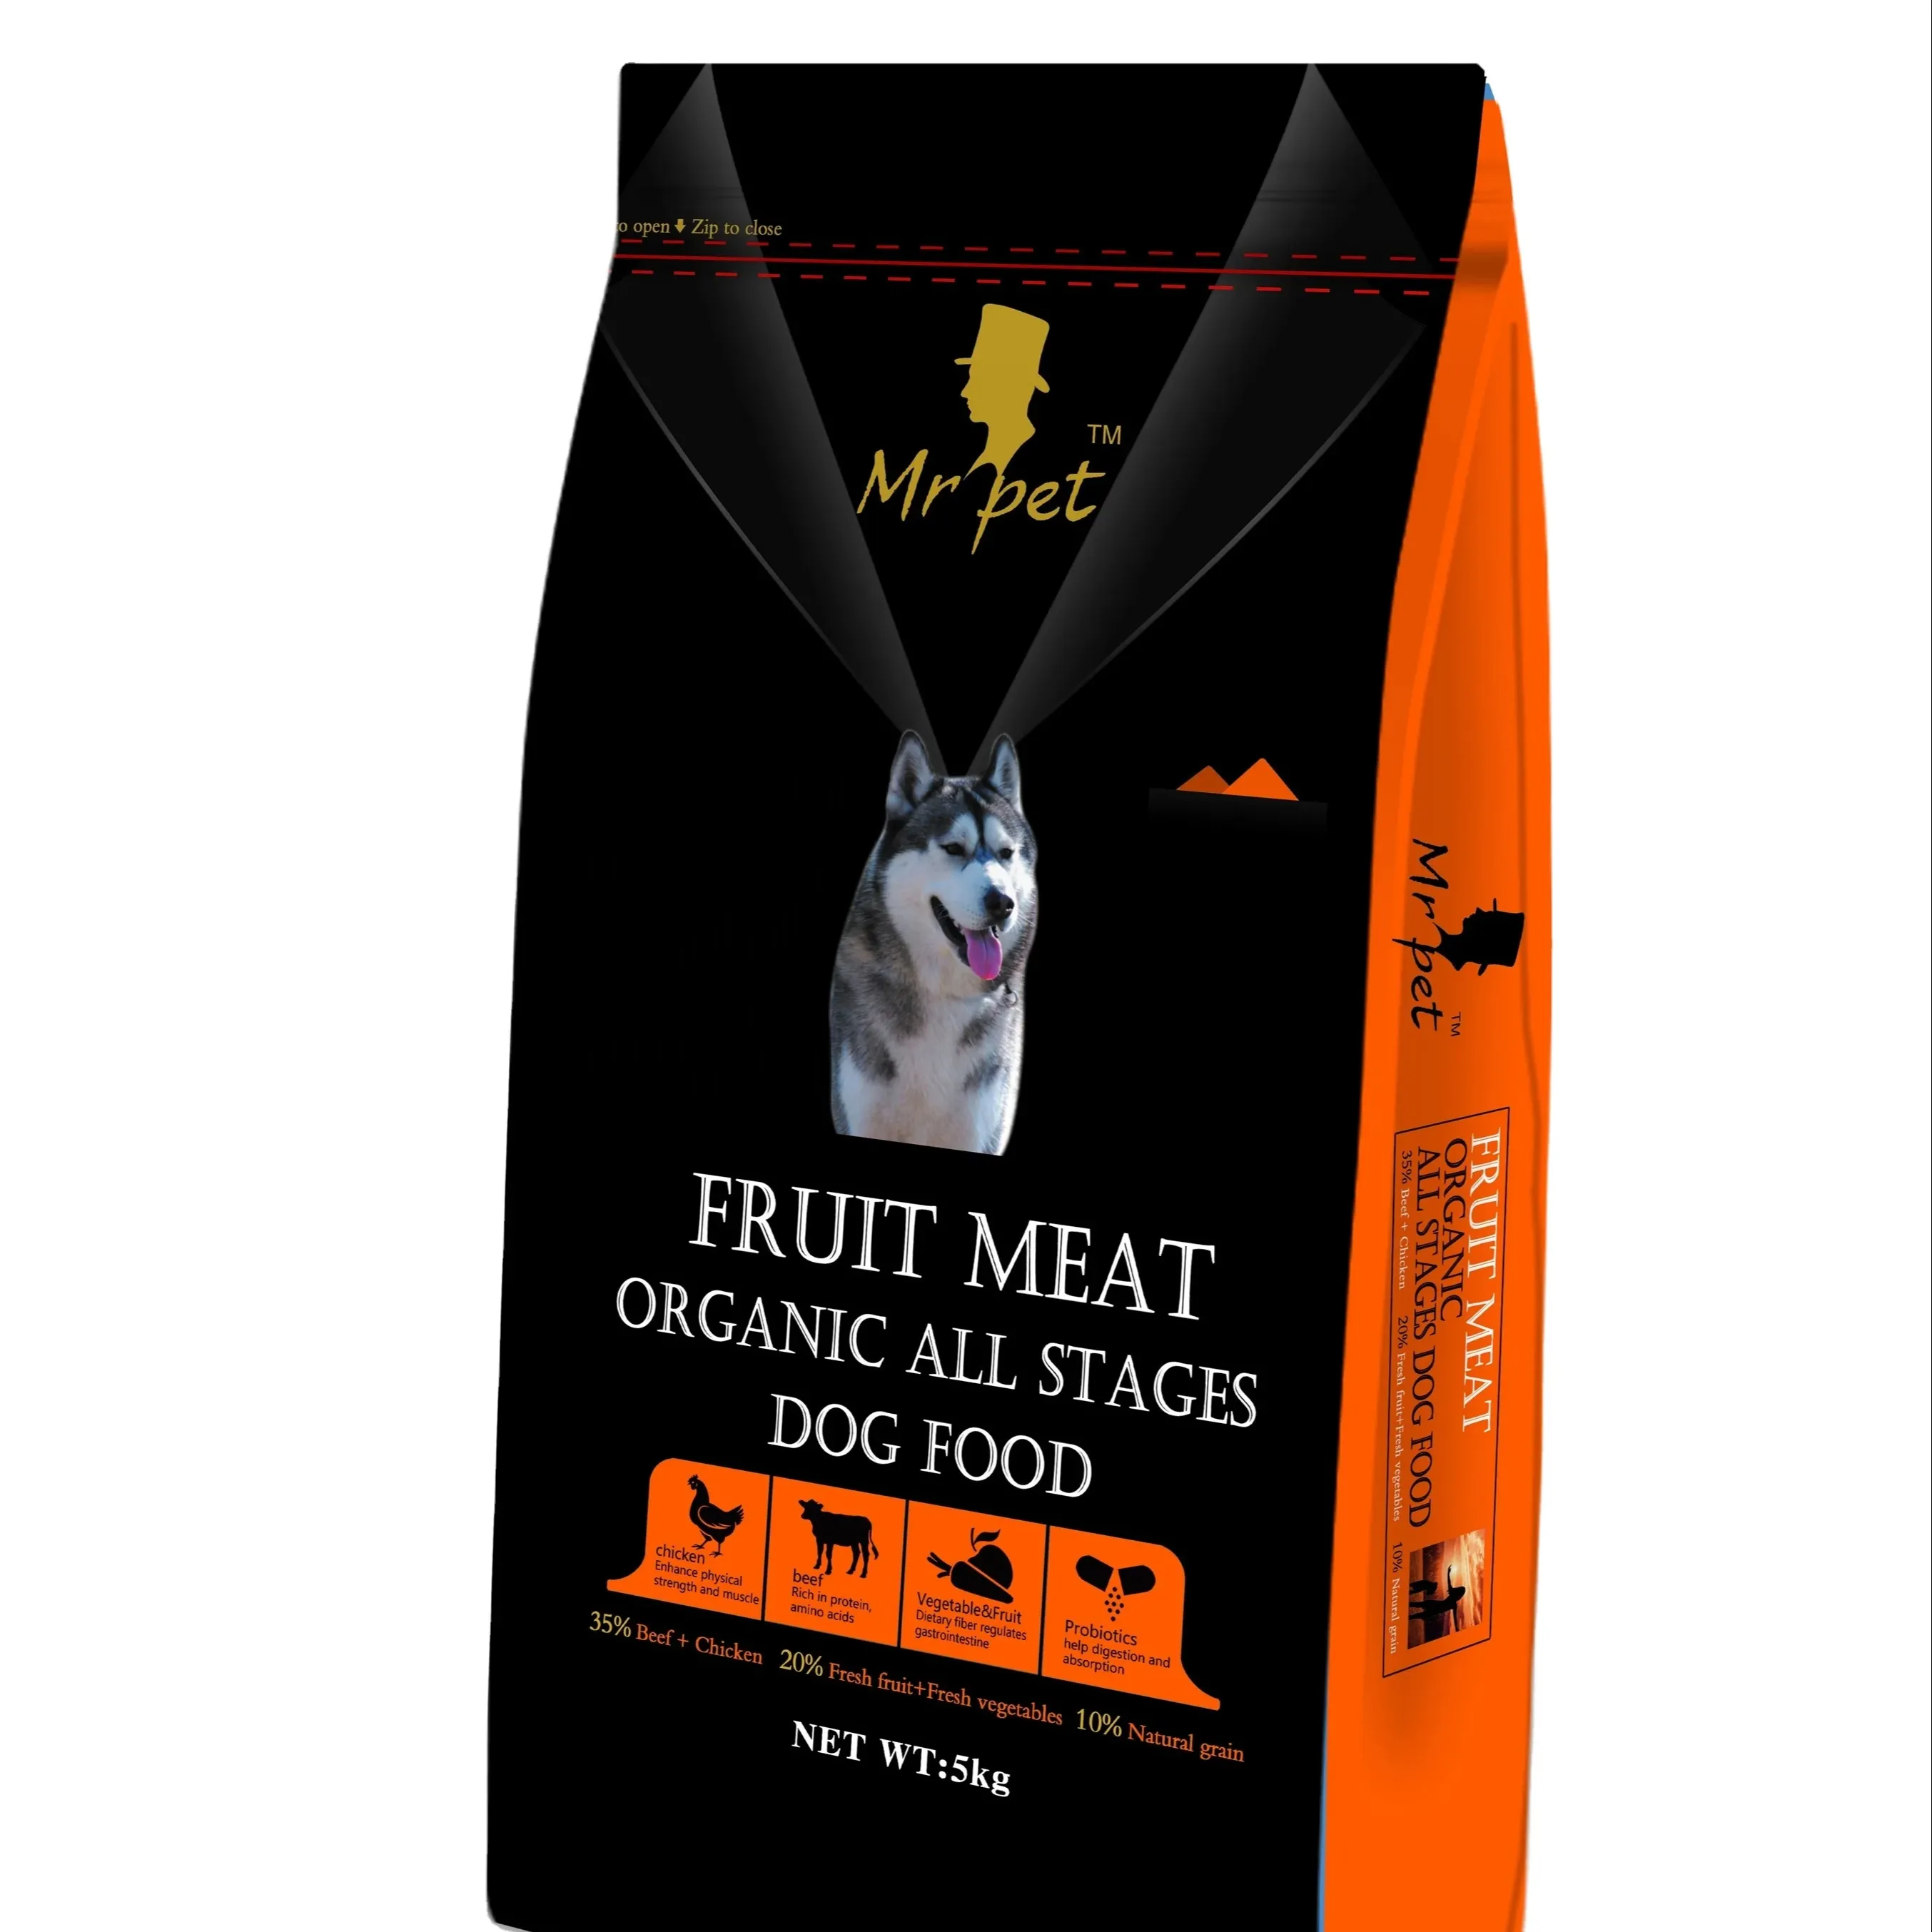 Comida para perros estándar OEM de exportación al por mayor de fábrica, comida para perros seca para mascotas con etiqueta privada original altamente nutricional